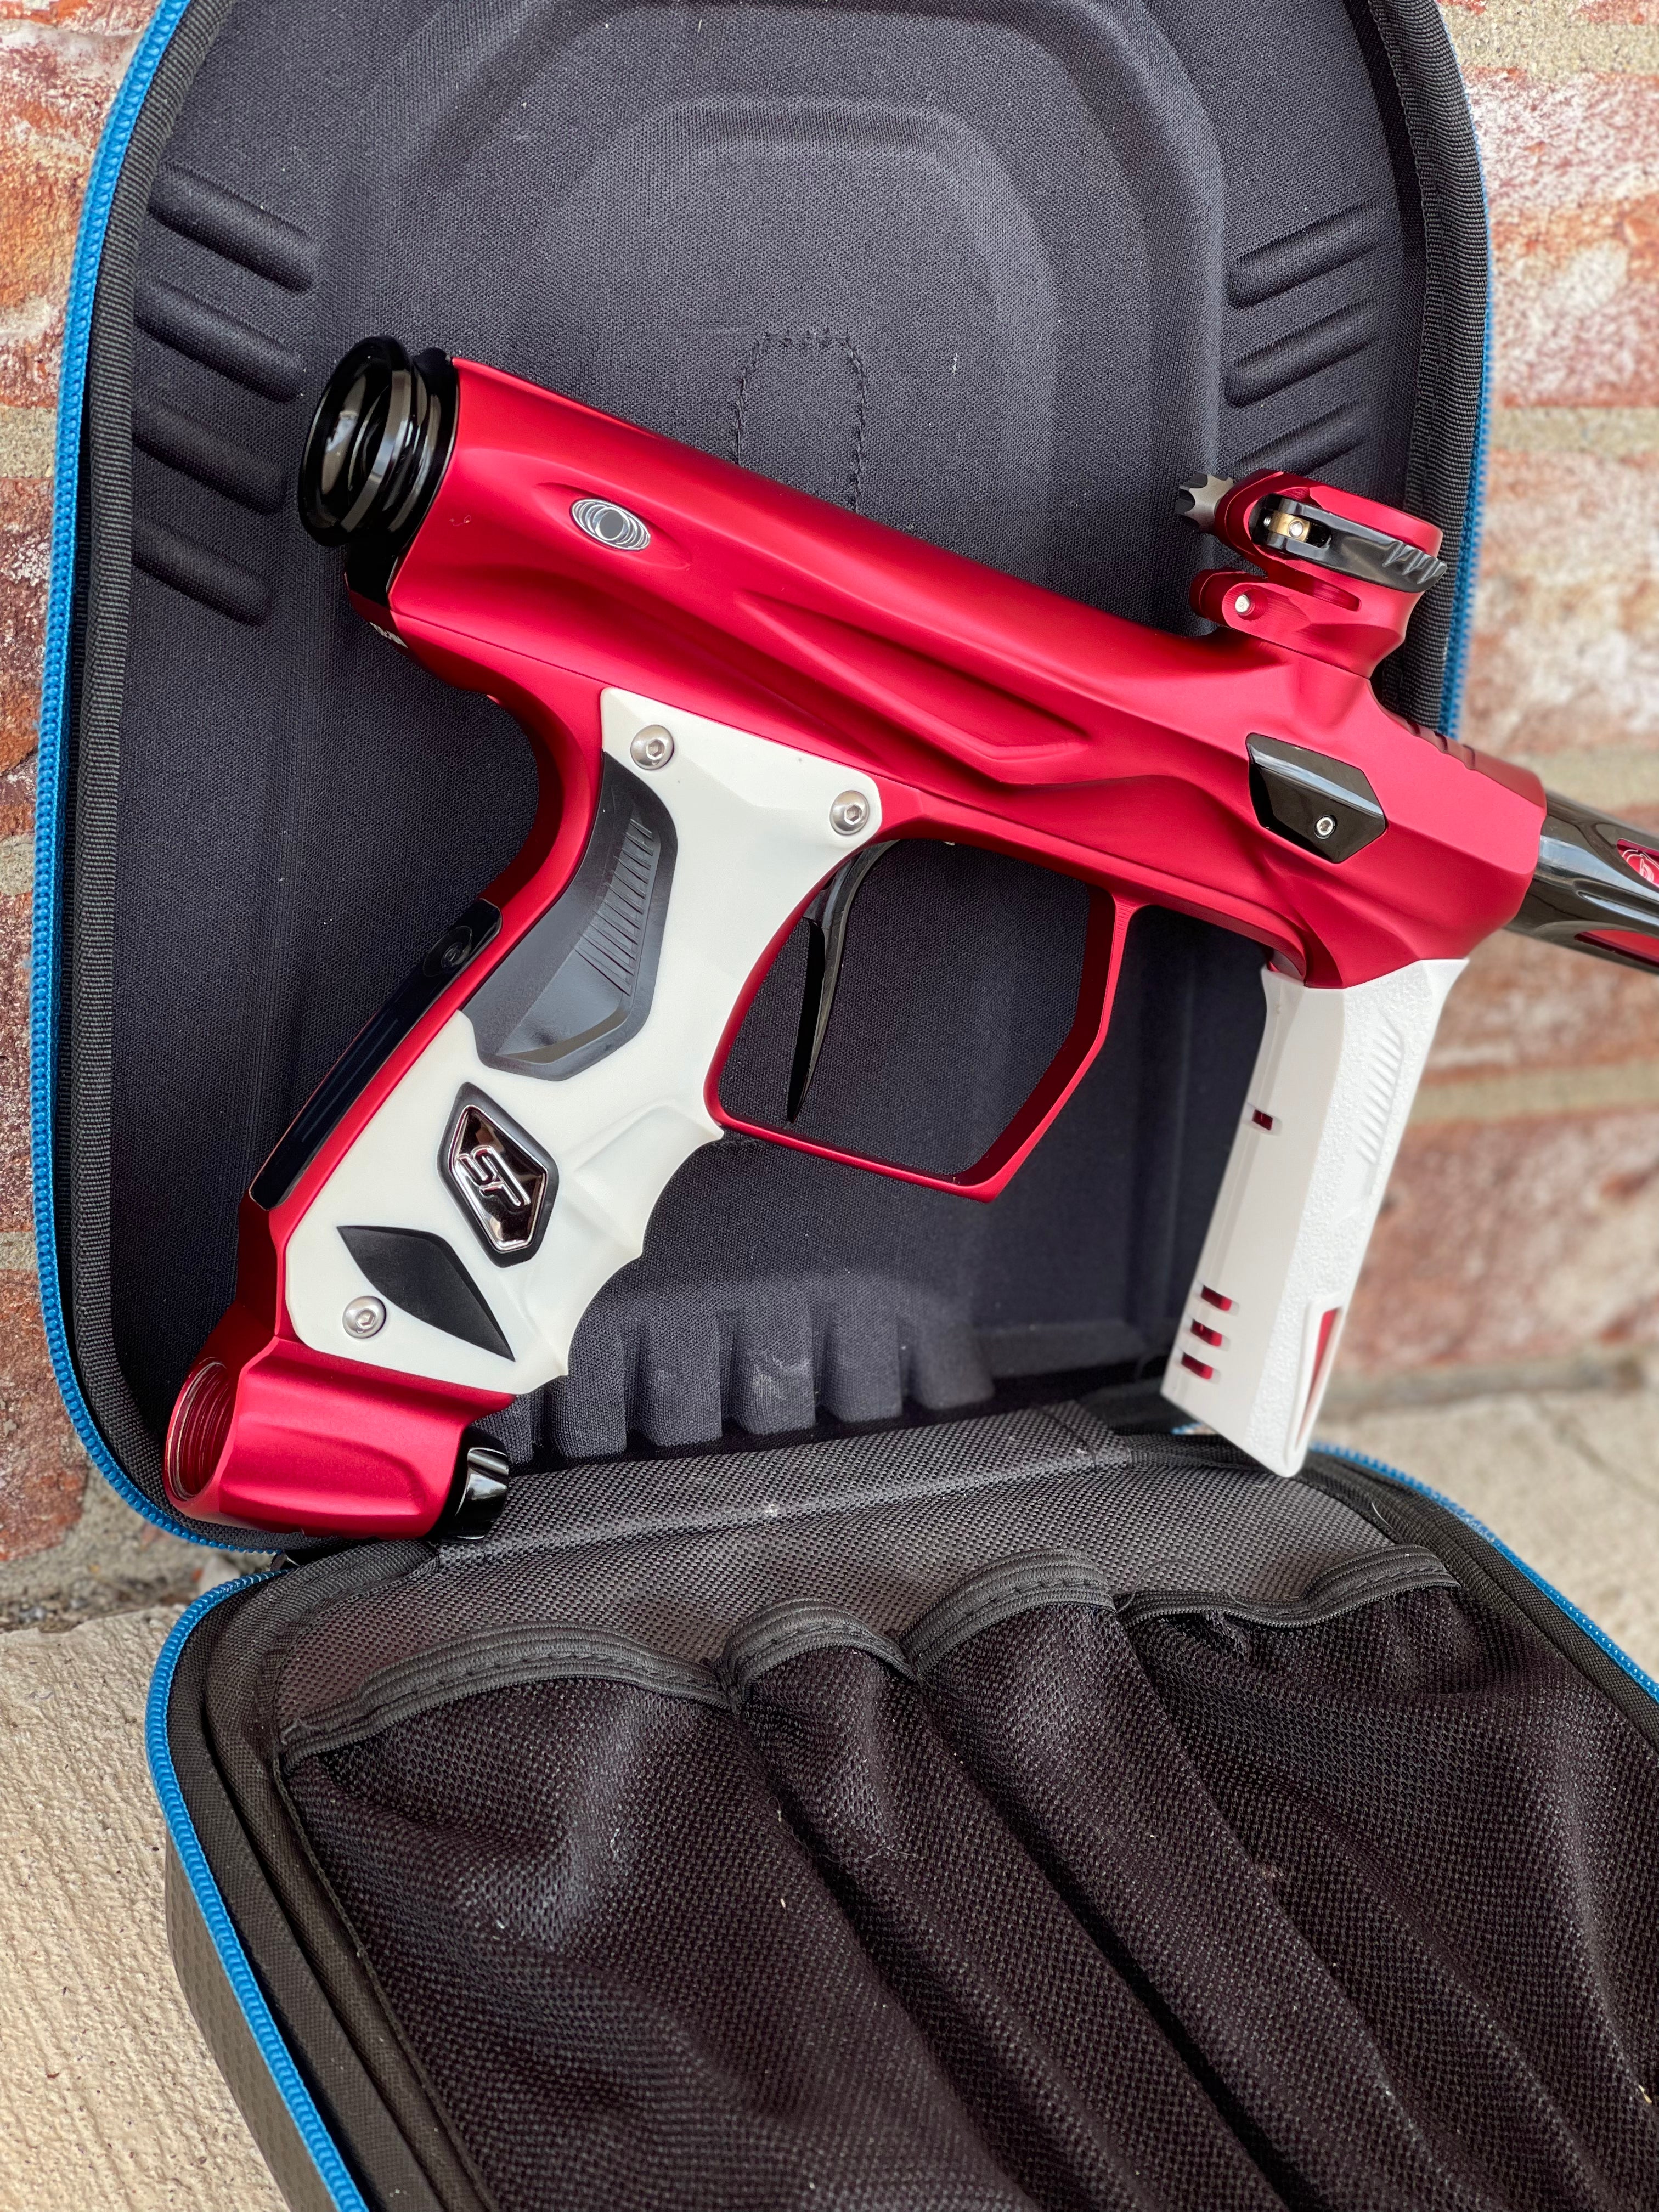 Used Shocker AMP Paintball Gun - Dust Red